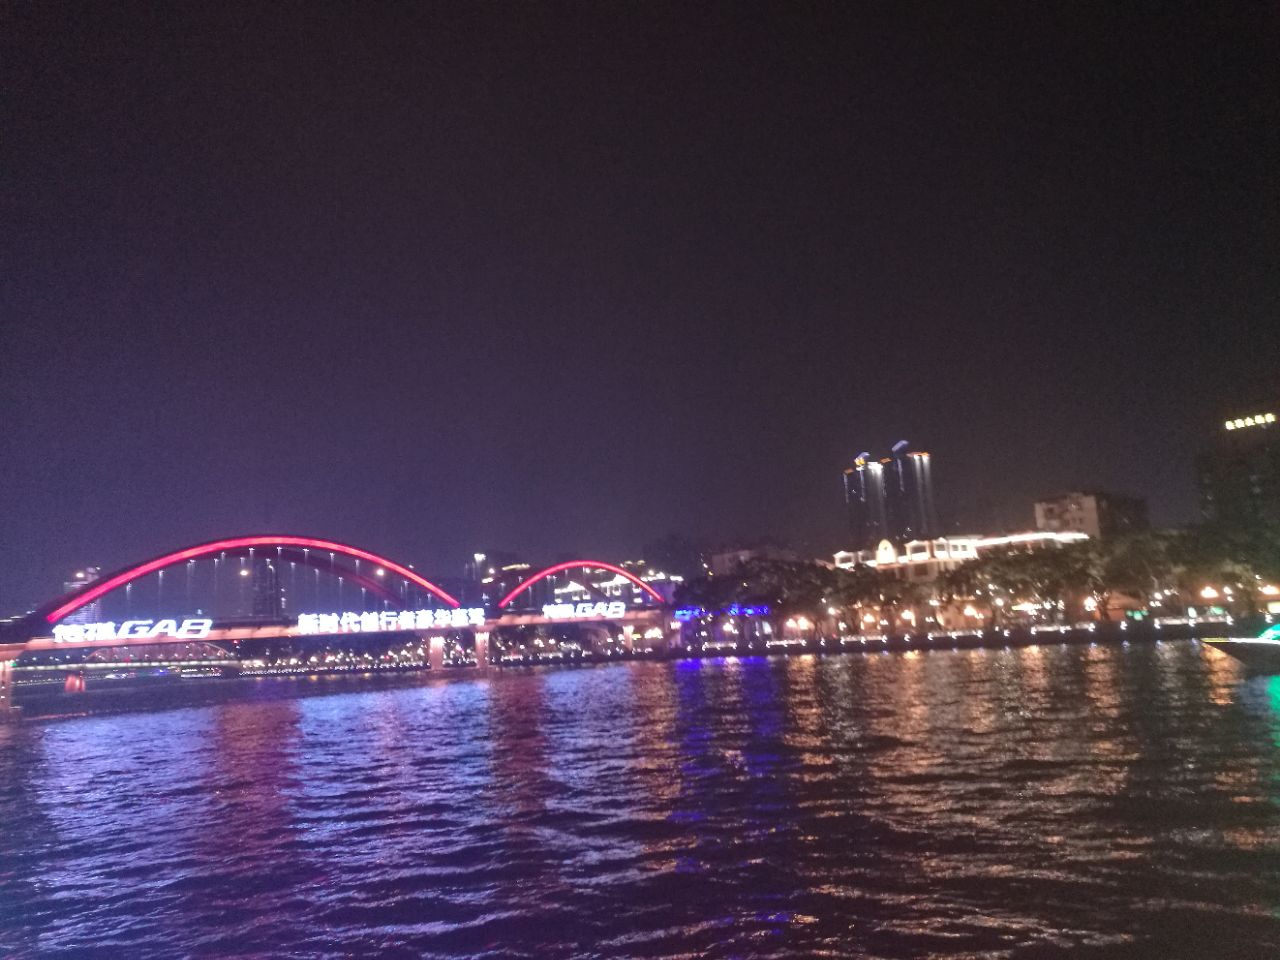 珠江夜游中大码头